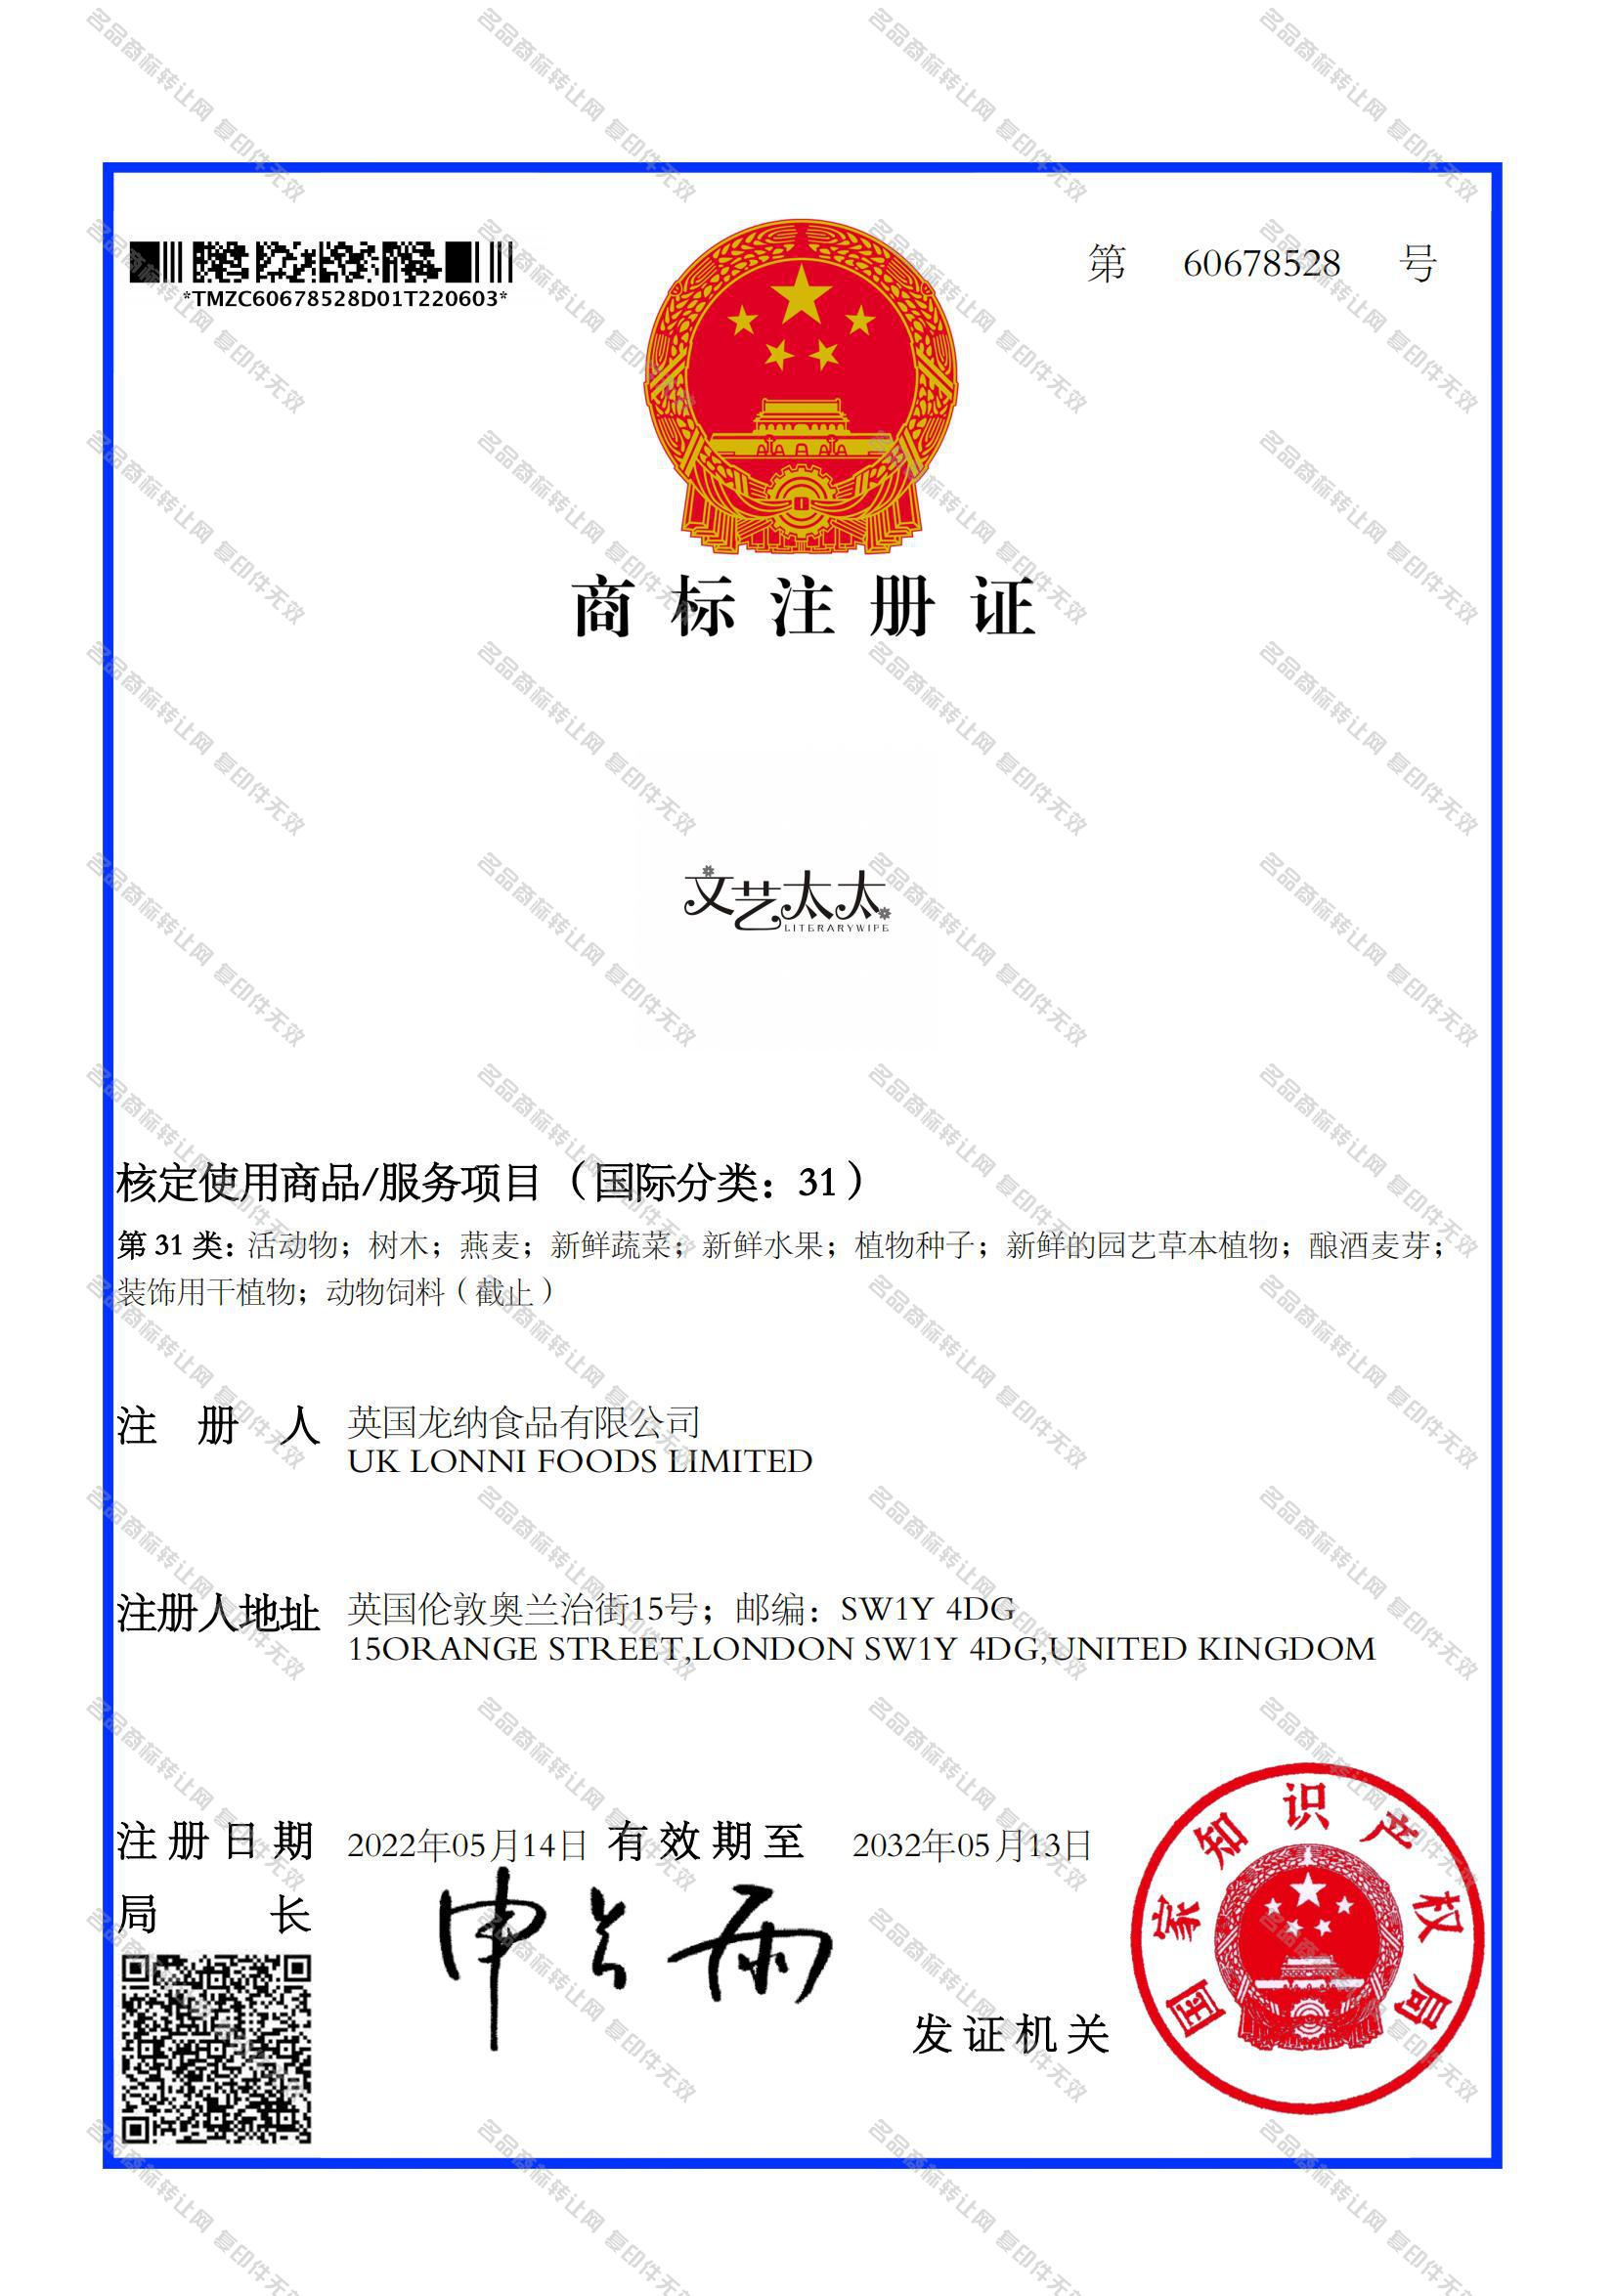 文艺太太 LITERARYWIPE注册证